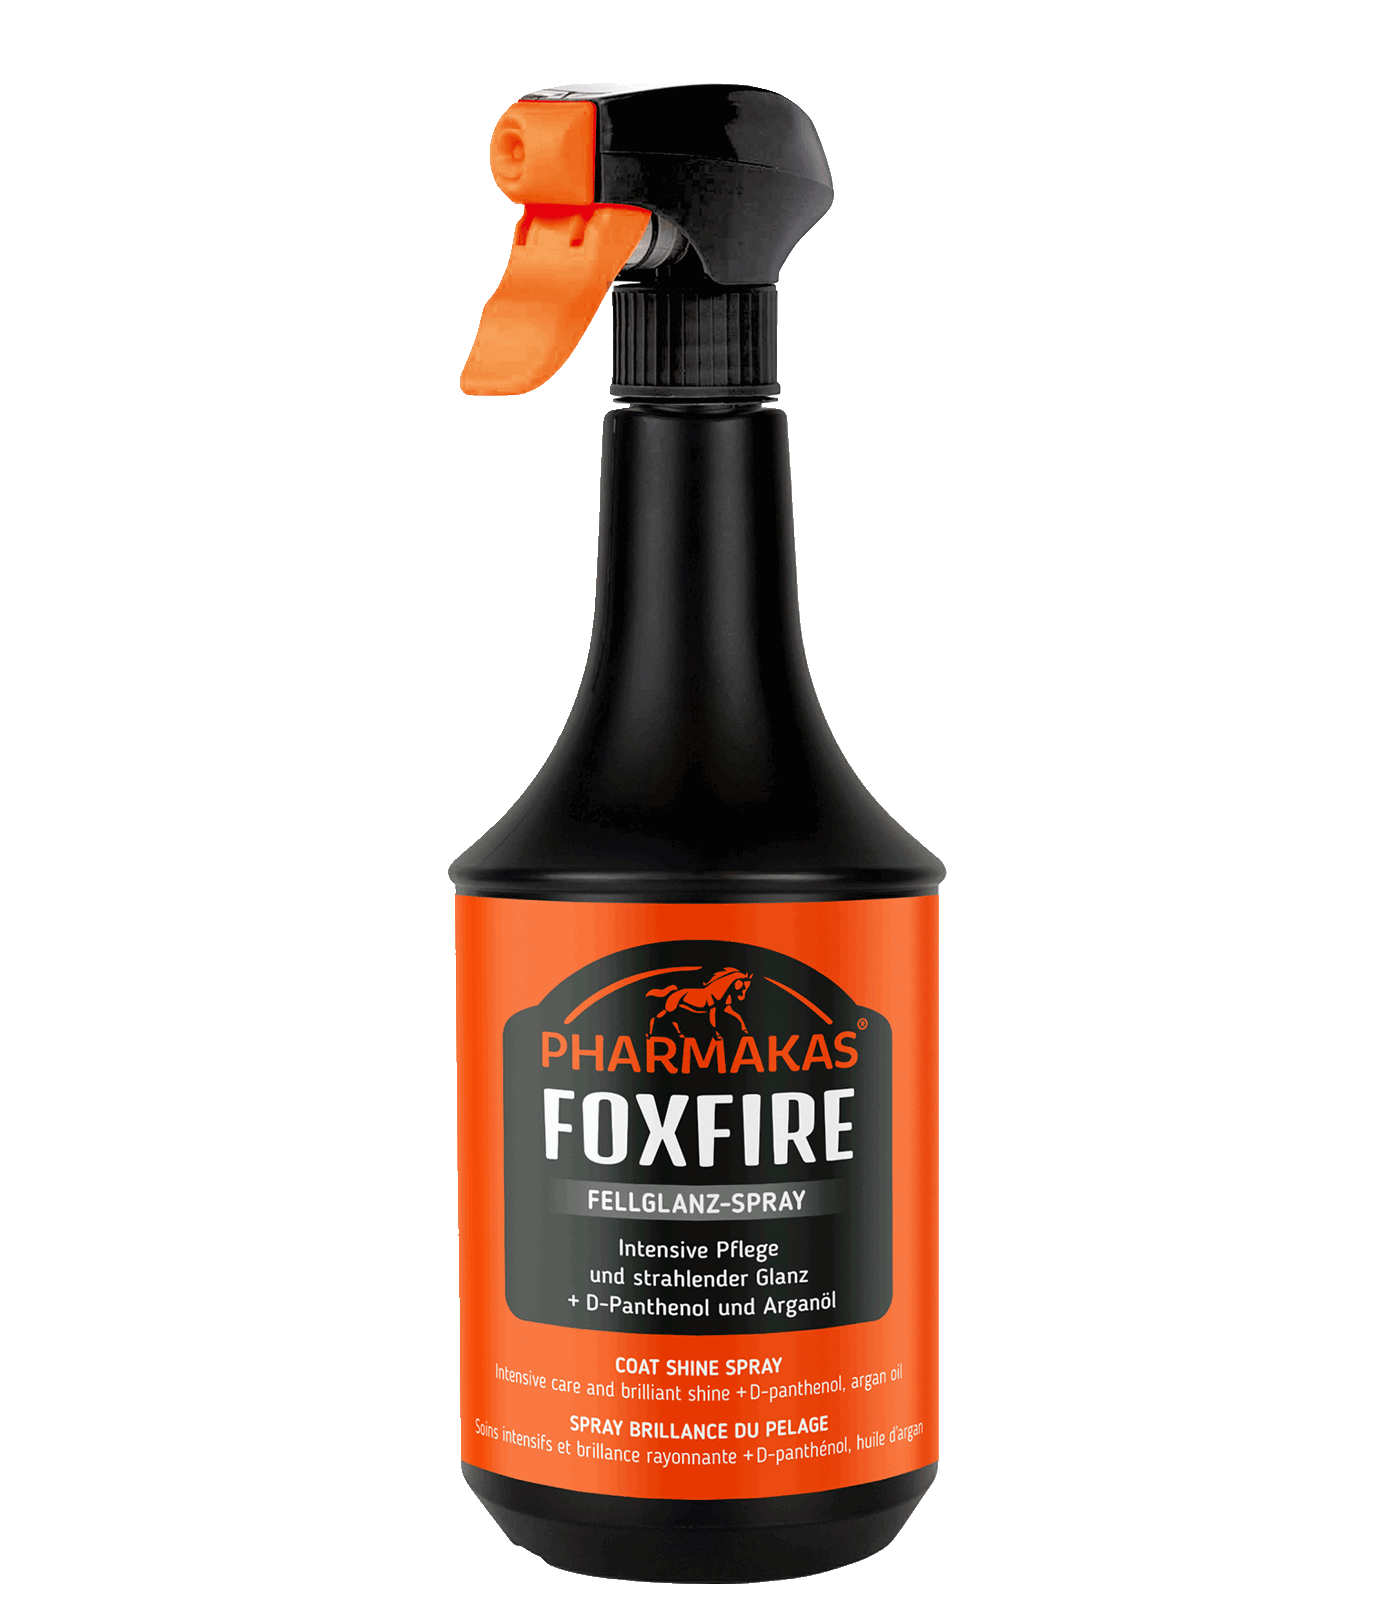 Foxfire szőr- és farokápolószer, 1000 ml